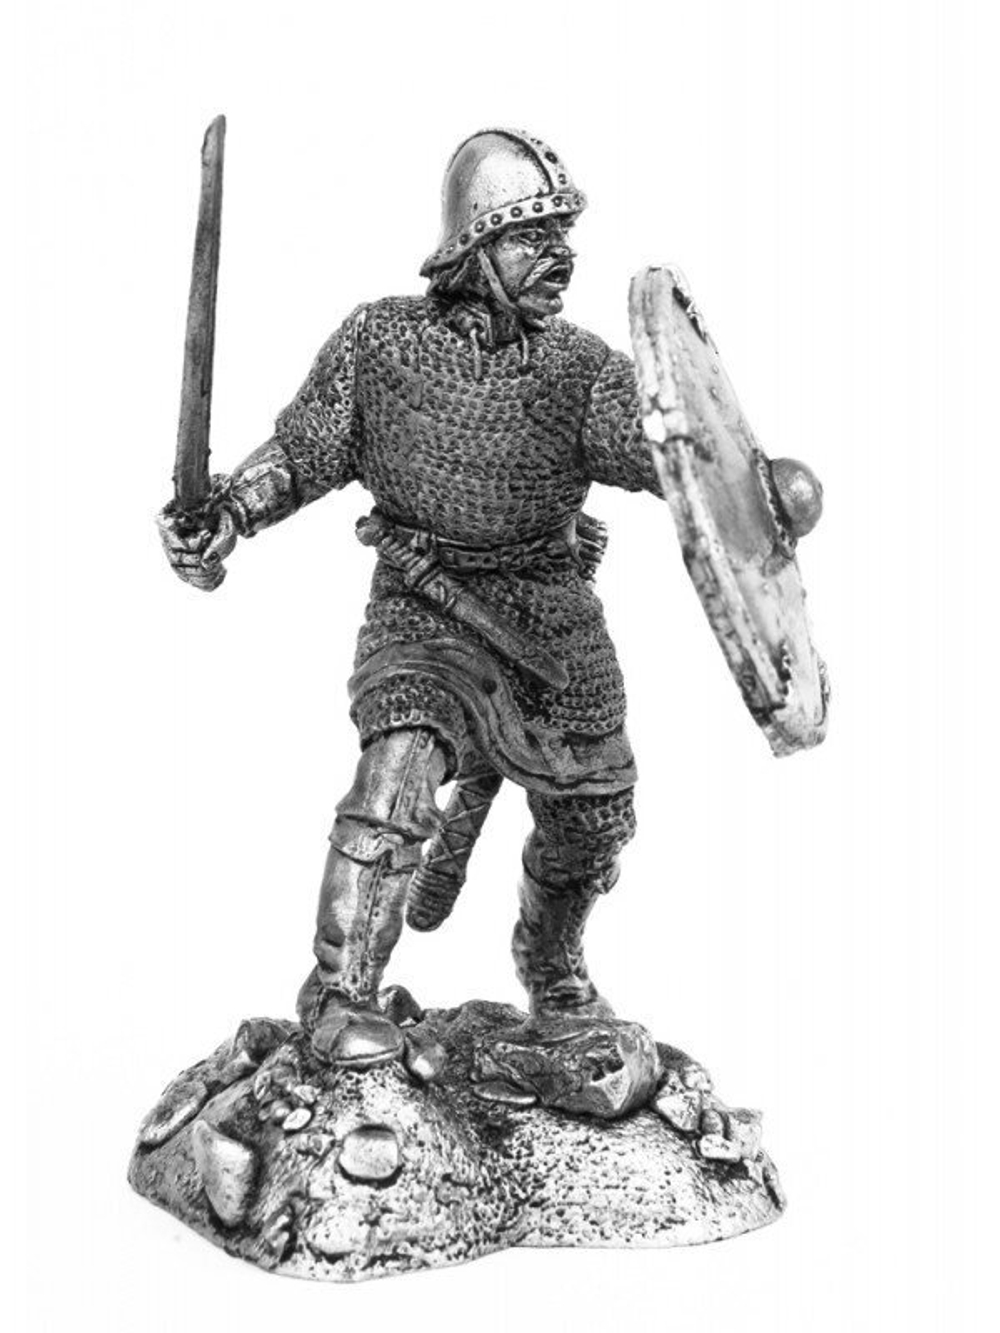 Оловянный солдатик Воин Роланда 1, около 800 г.